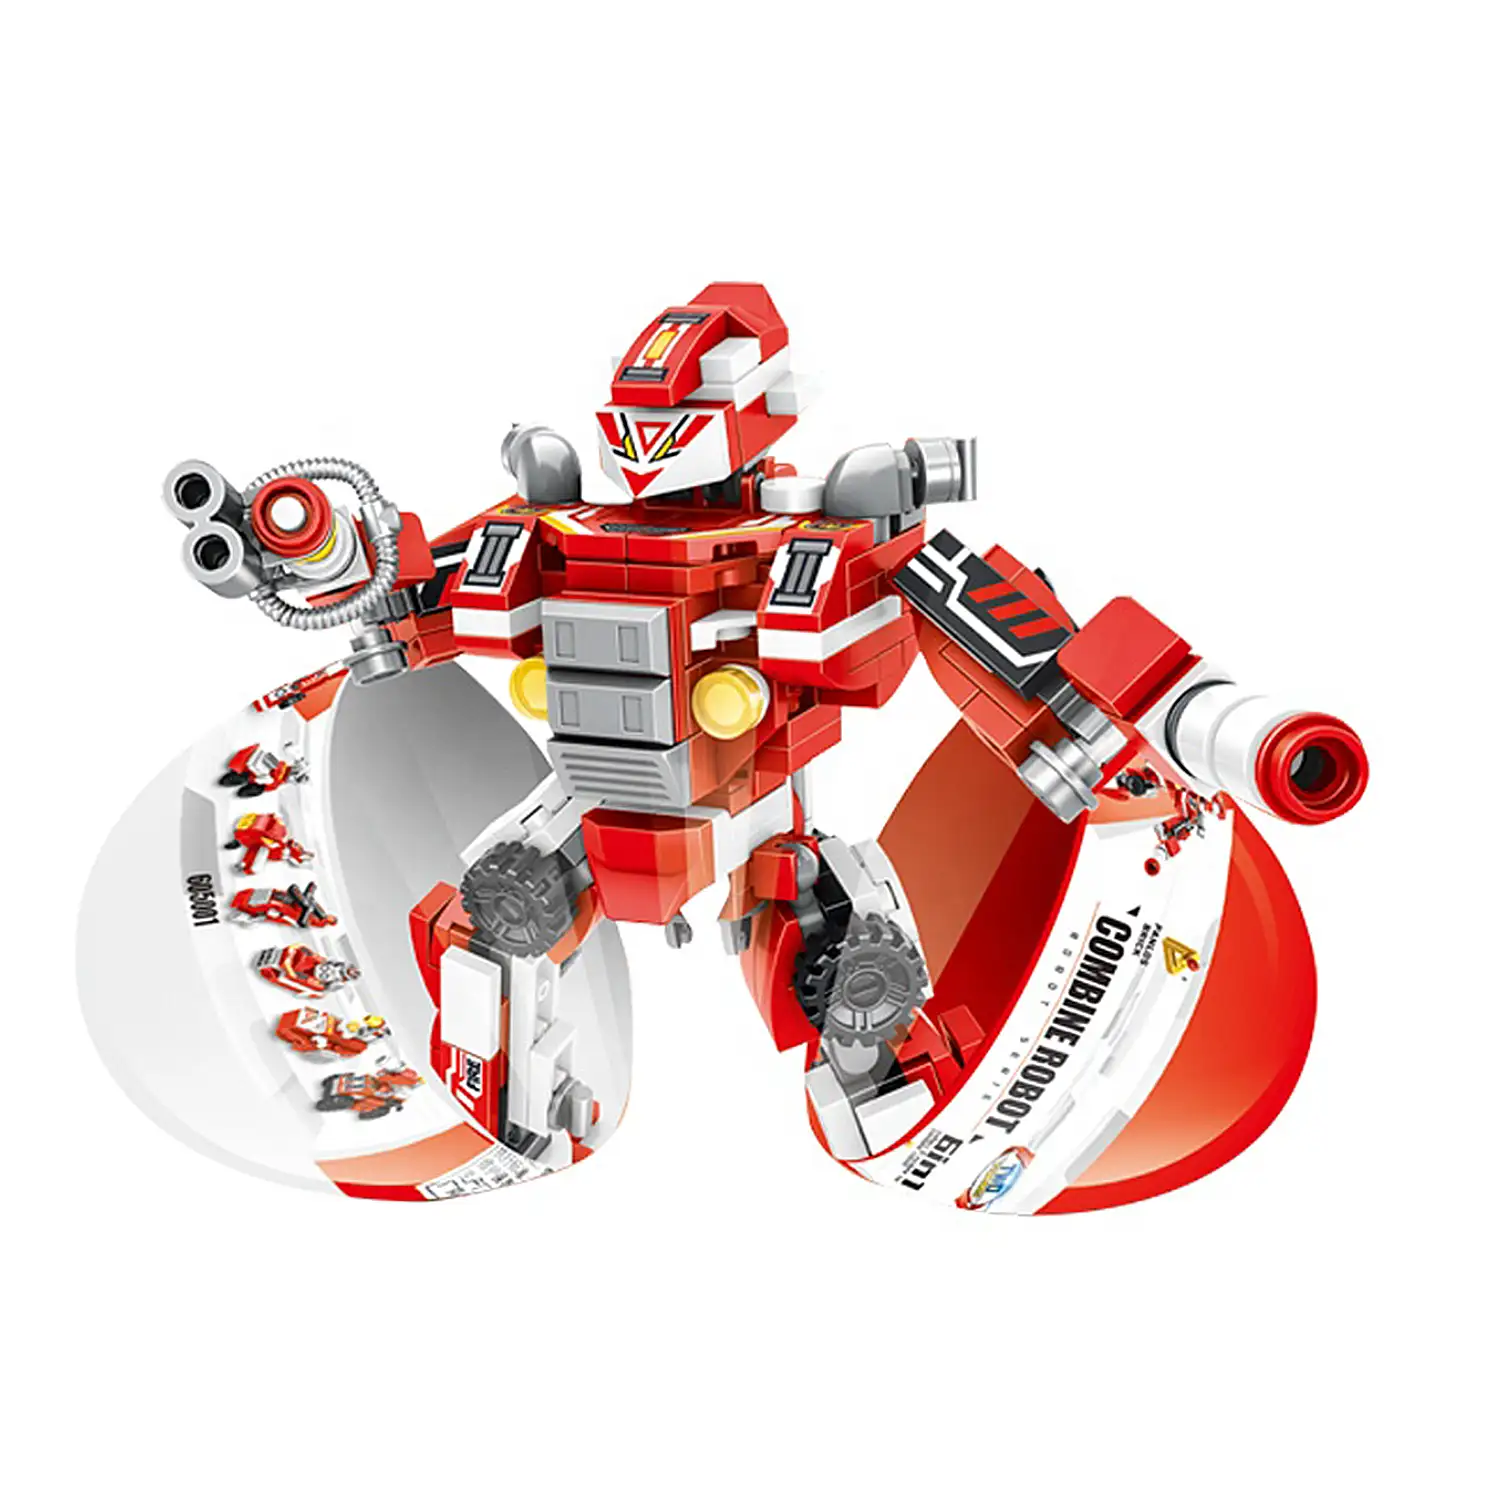 Robot de fuego 6 en 1, con 271 piezas. Construye 6 vehiculos de rescate individuales (con 2 formas cada uno), acopla y convierte en un robot.